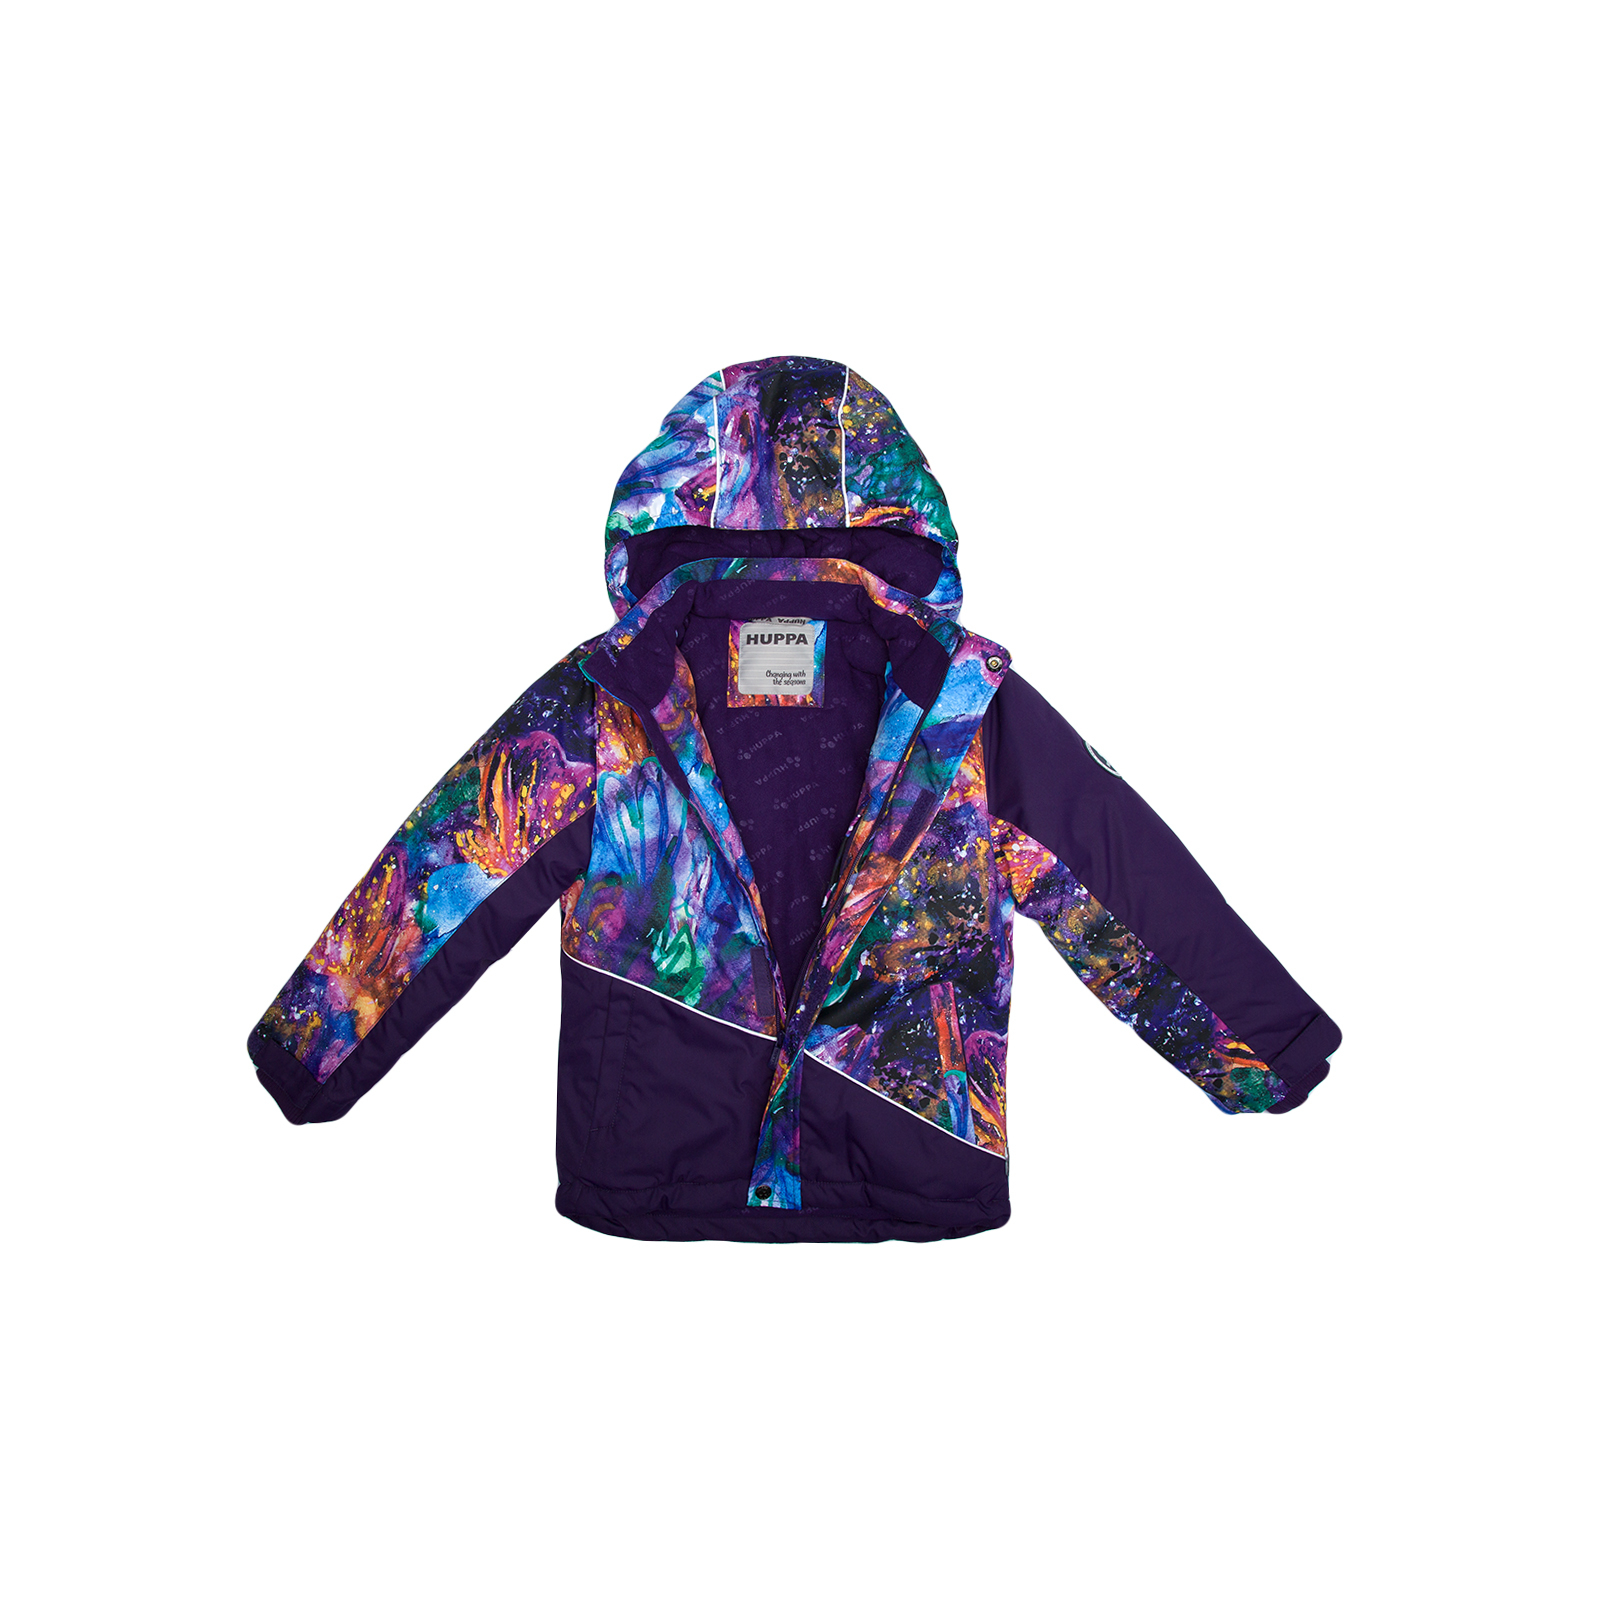 Куртка Huppa ALEX 1 17800130 пурпур с принтом/тёмно-лилoвый 128 (4741468986982) изображение 3